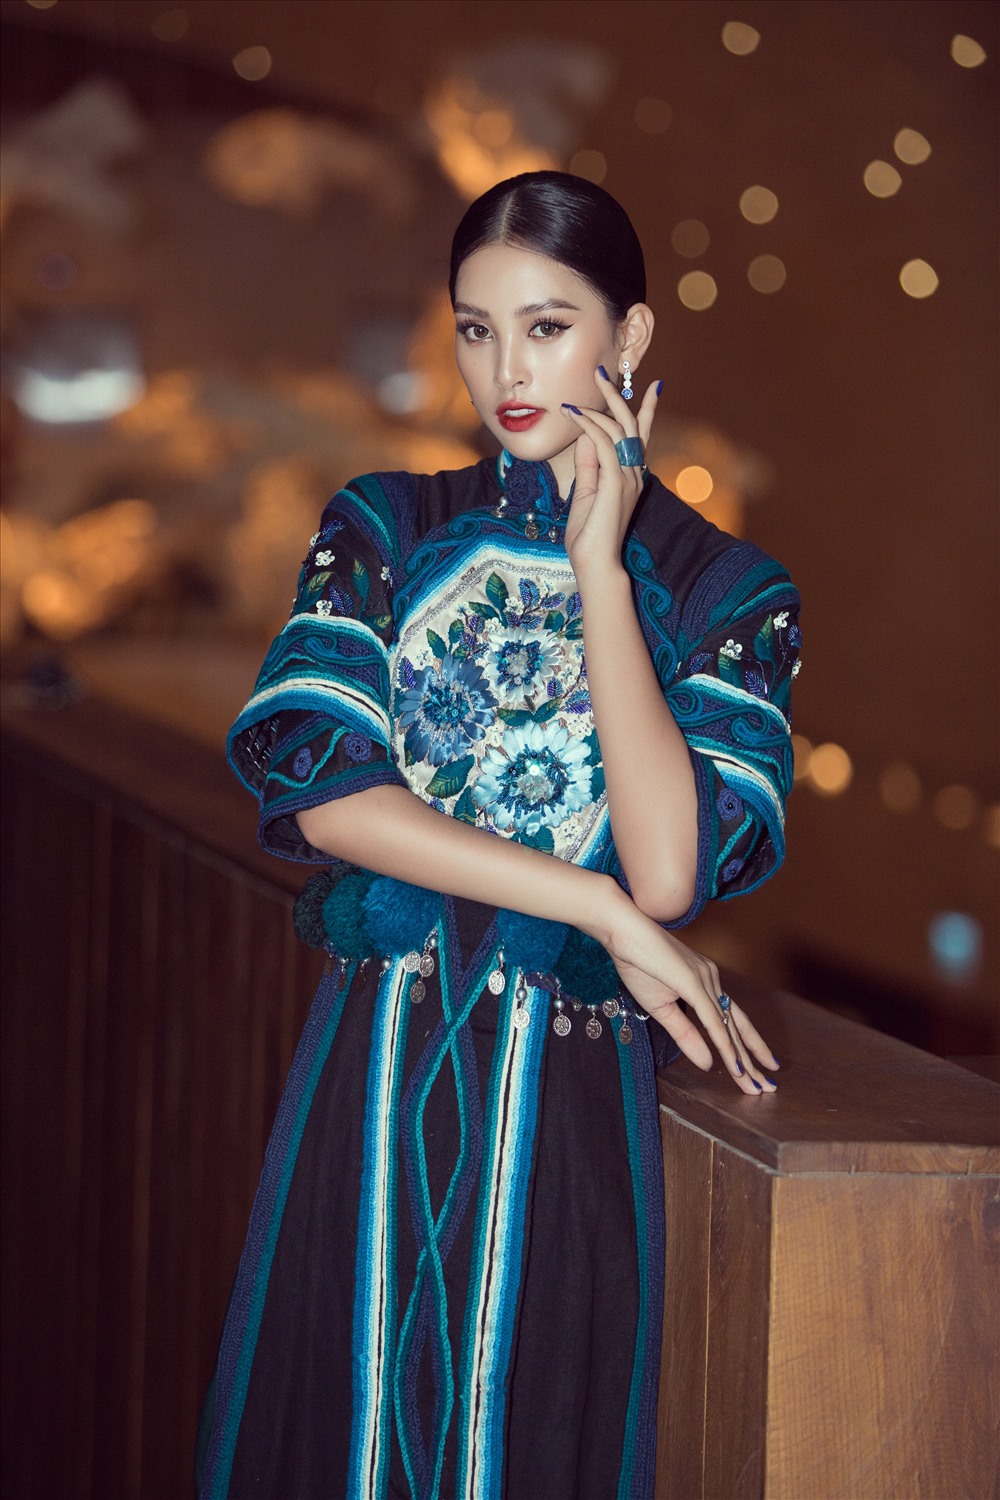 Chiếc váy nhung xanh được thiết kế với ý tưởng dựa trên bộ trang phục của người Hà Nhì. Bản sắc văn hóa của dân tộc Việt Nam được thể hiện khéo léo qua từng đường may họa tiết trên váy, tuy đơn giản nhưng lại giúp Tiểu Vy nổi bật và khác biệt. Ảnh: Viết Quý.